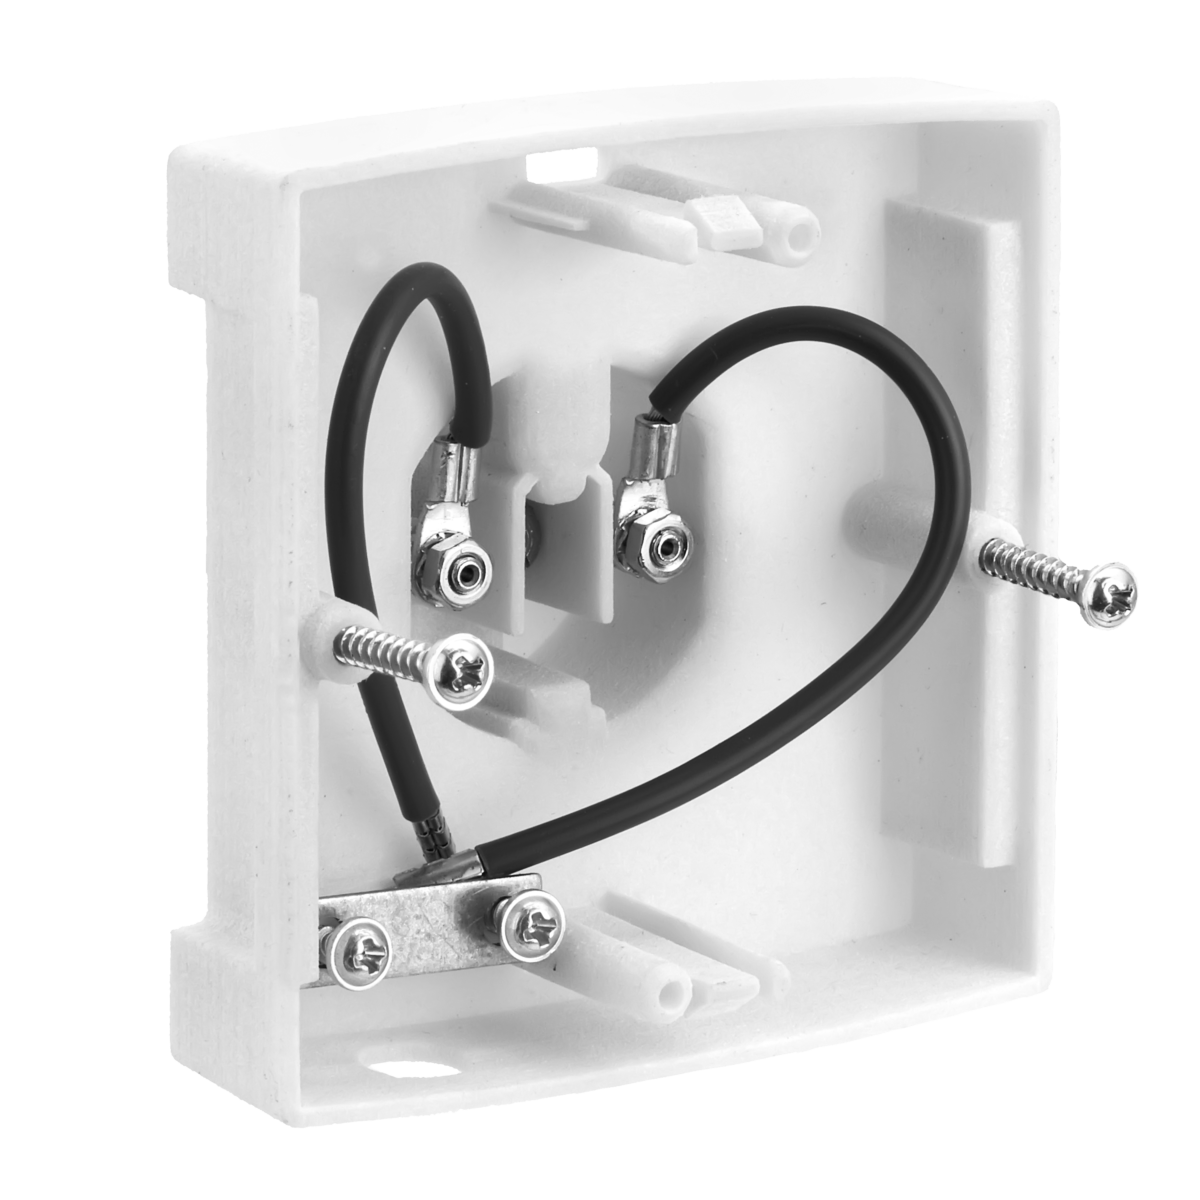 NANOCOLOR USB T-Set para calibración del bloque calefactor - Farmalatina